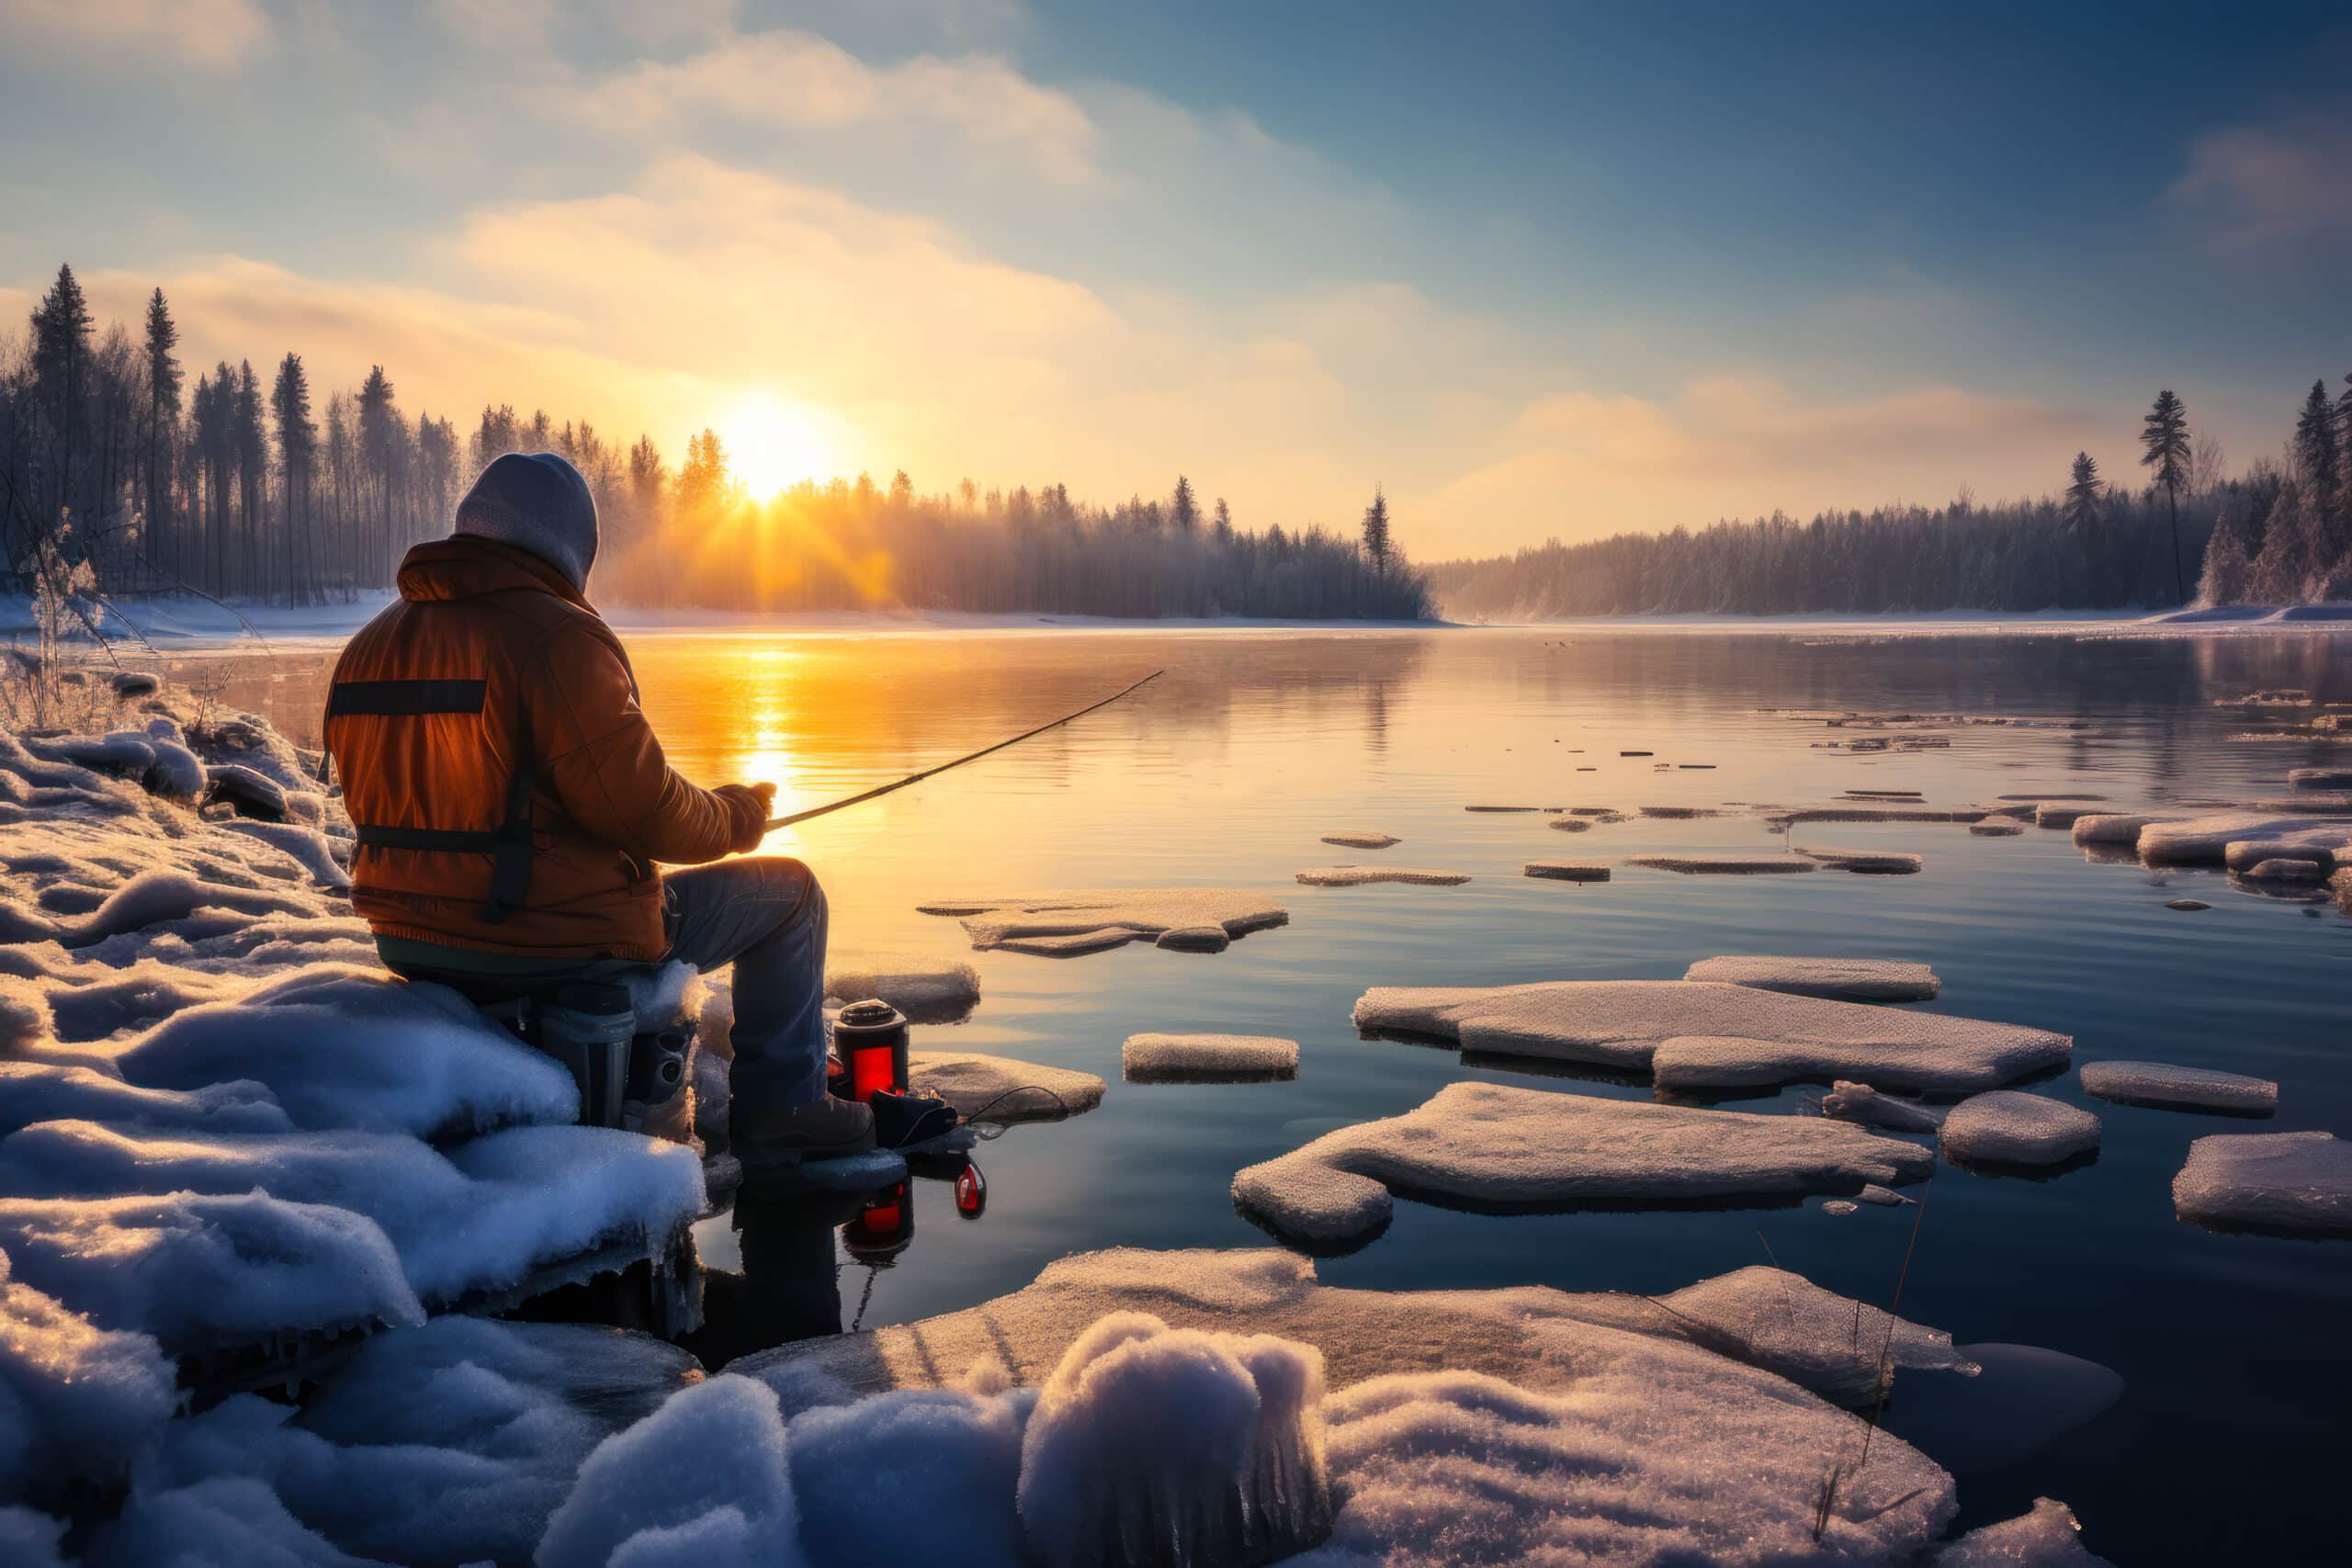 fanatic4fishing.com : How do you fish on a frozen lake?